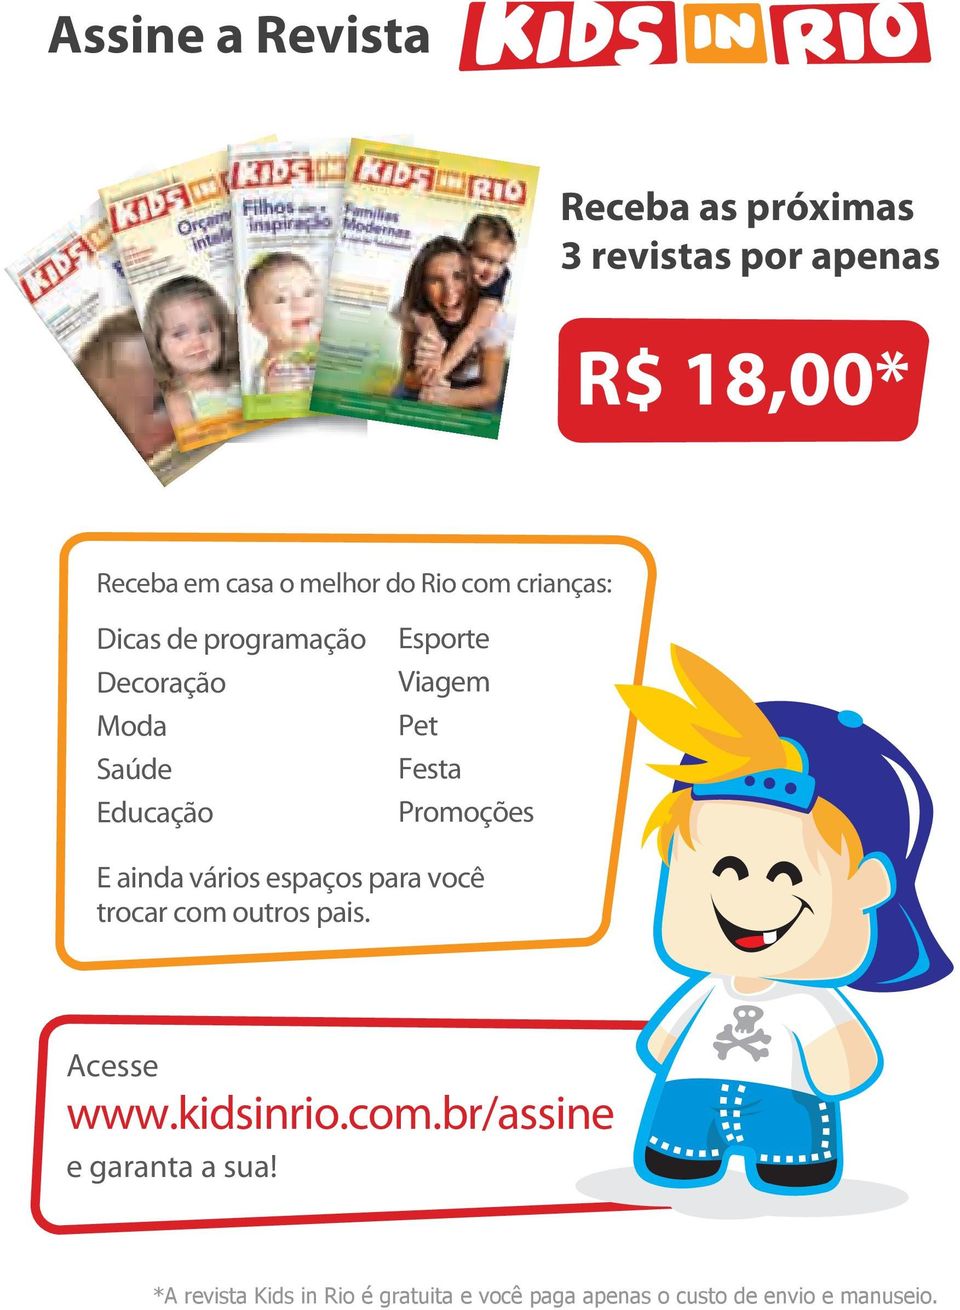 Promoções E ainda vários espaços para você trocar com outros pais. Acesse www.kidsinrio.com.br/assine e garanta a sua!